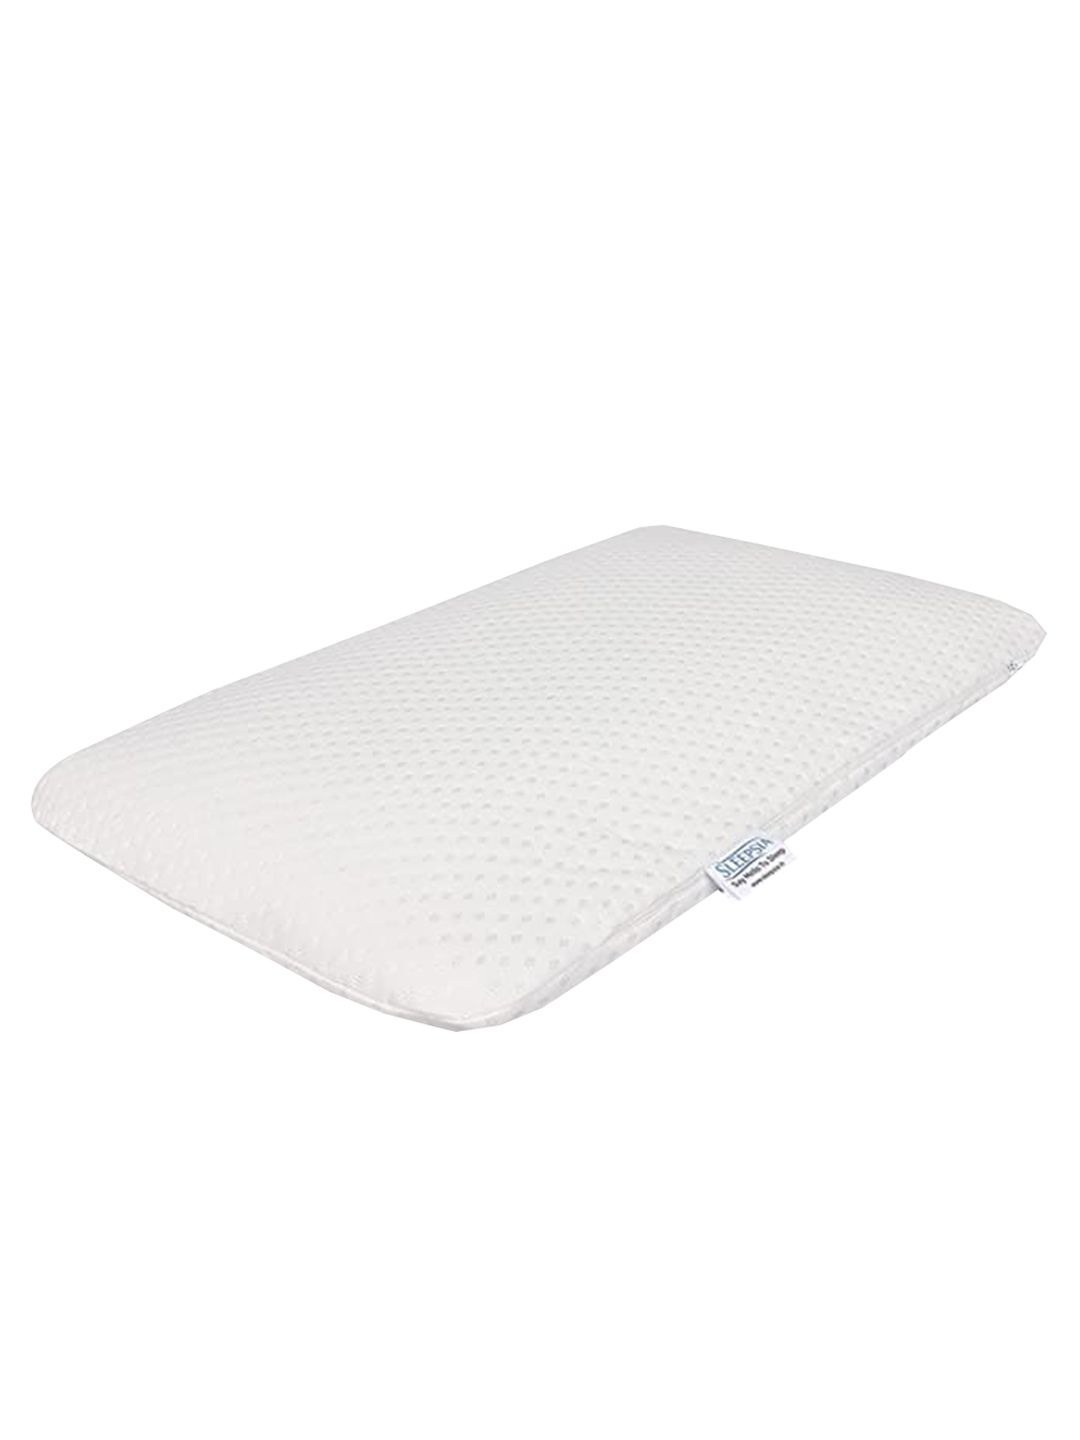 Sleepsia White Solid Therapedic Pillows Price in India